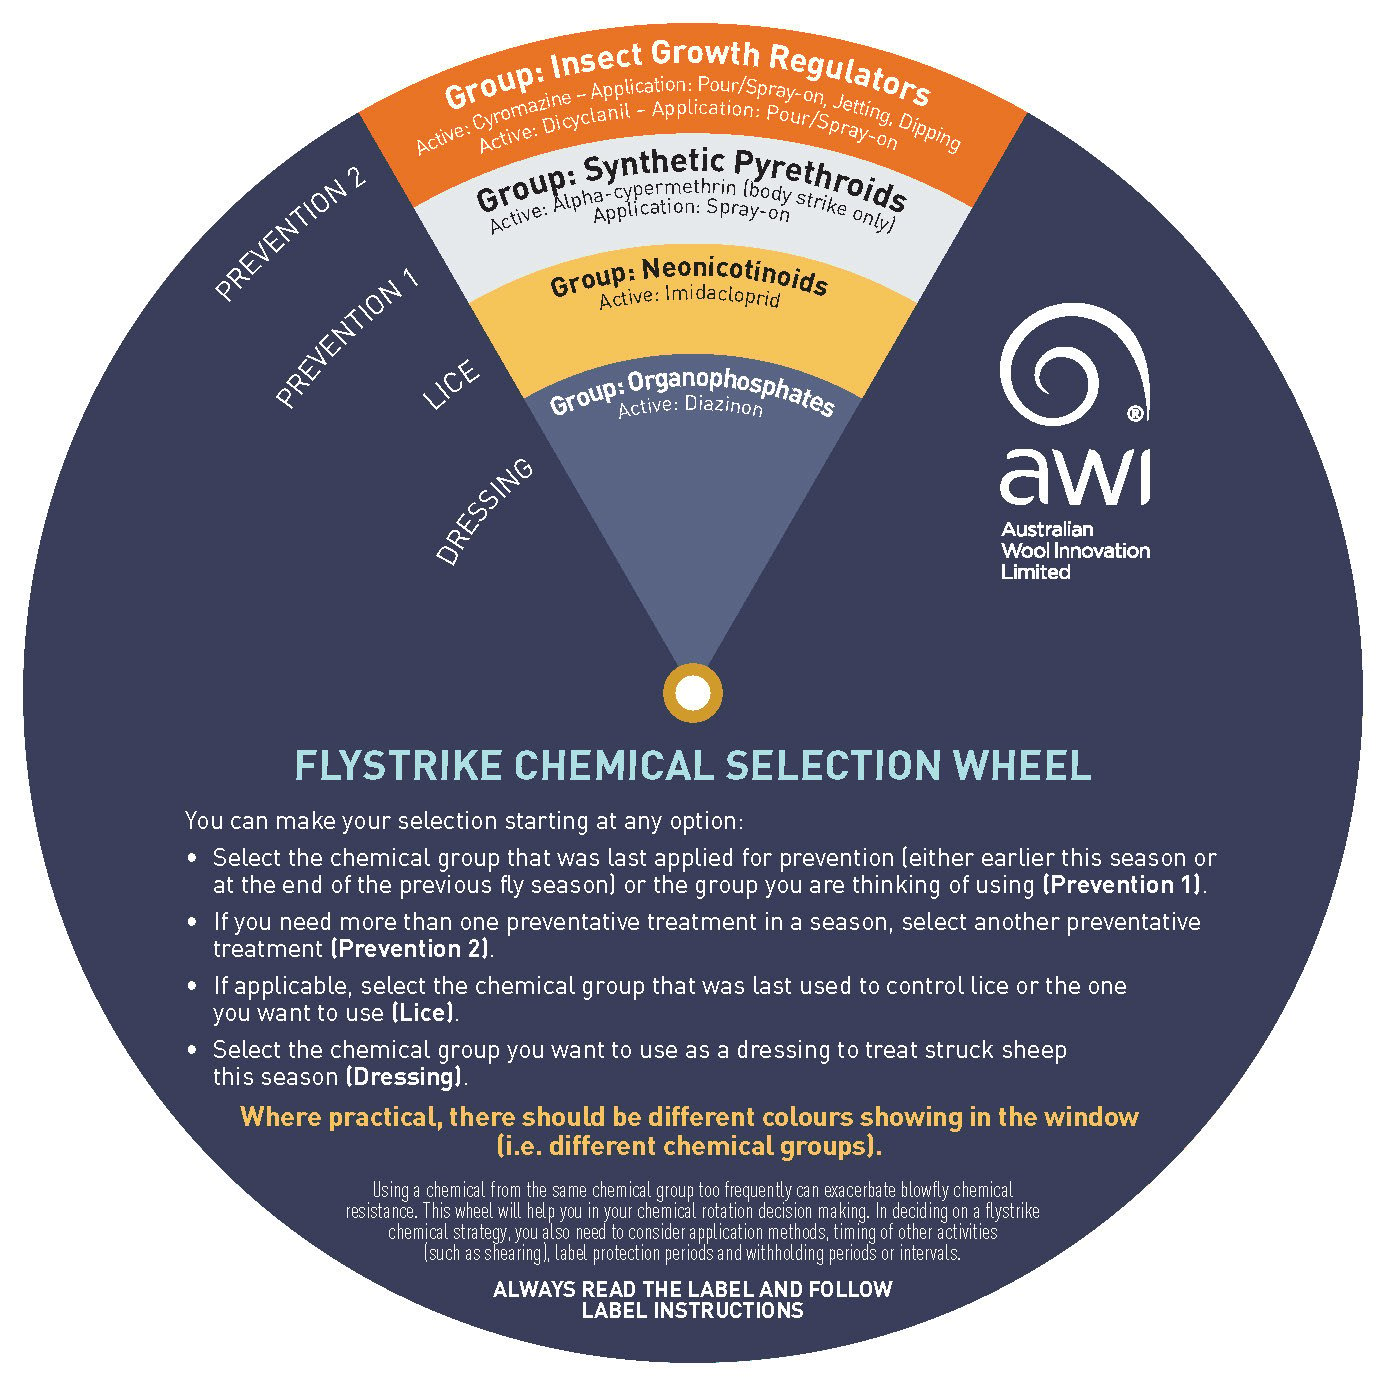 GD4433-flystrike chemical wheel-7_Page_1.jpg